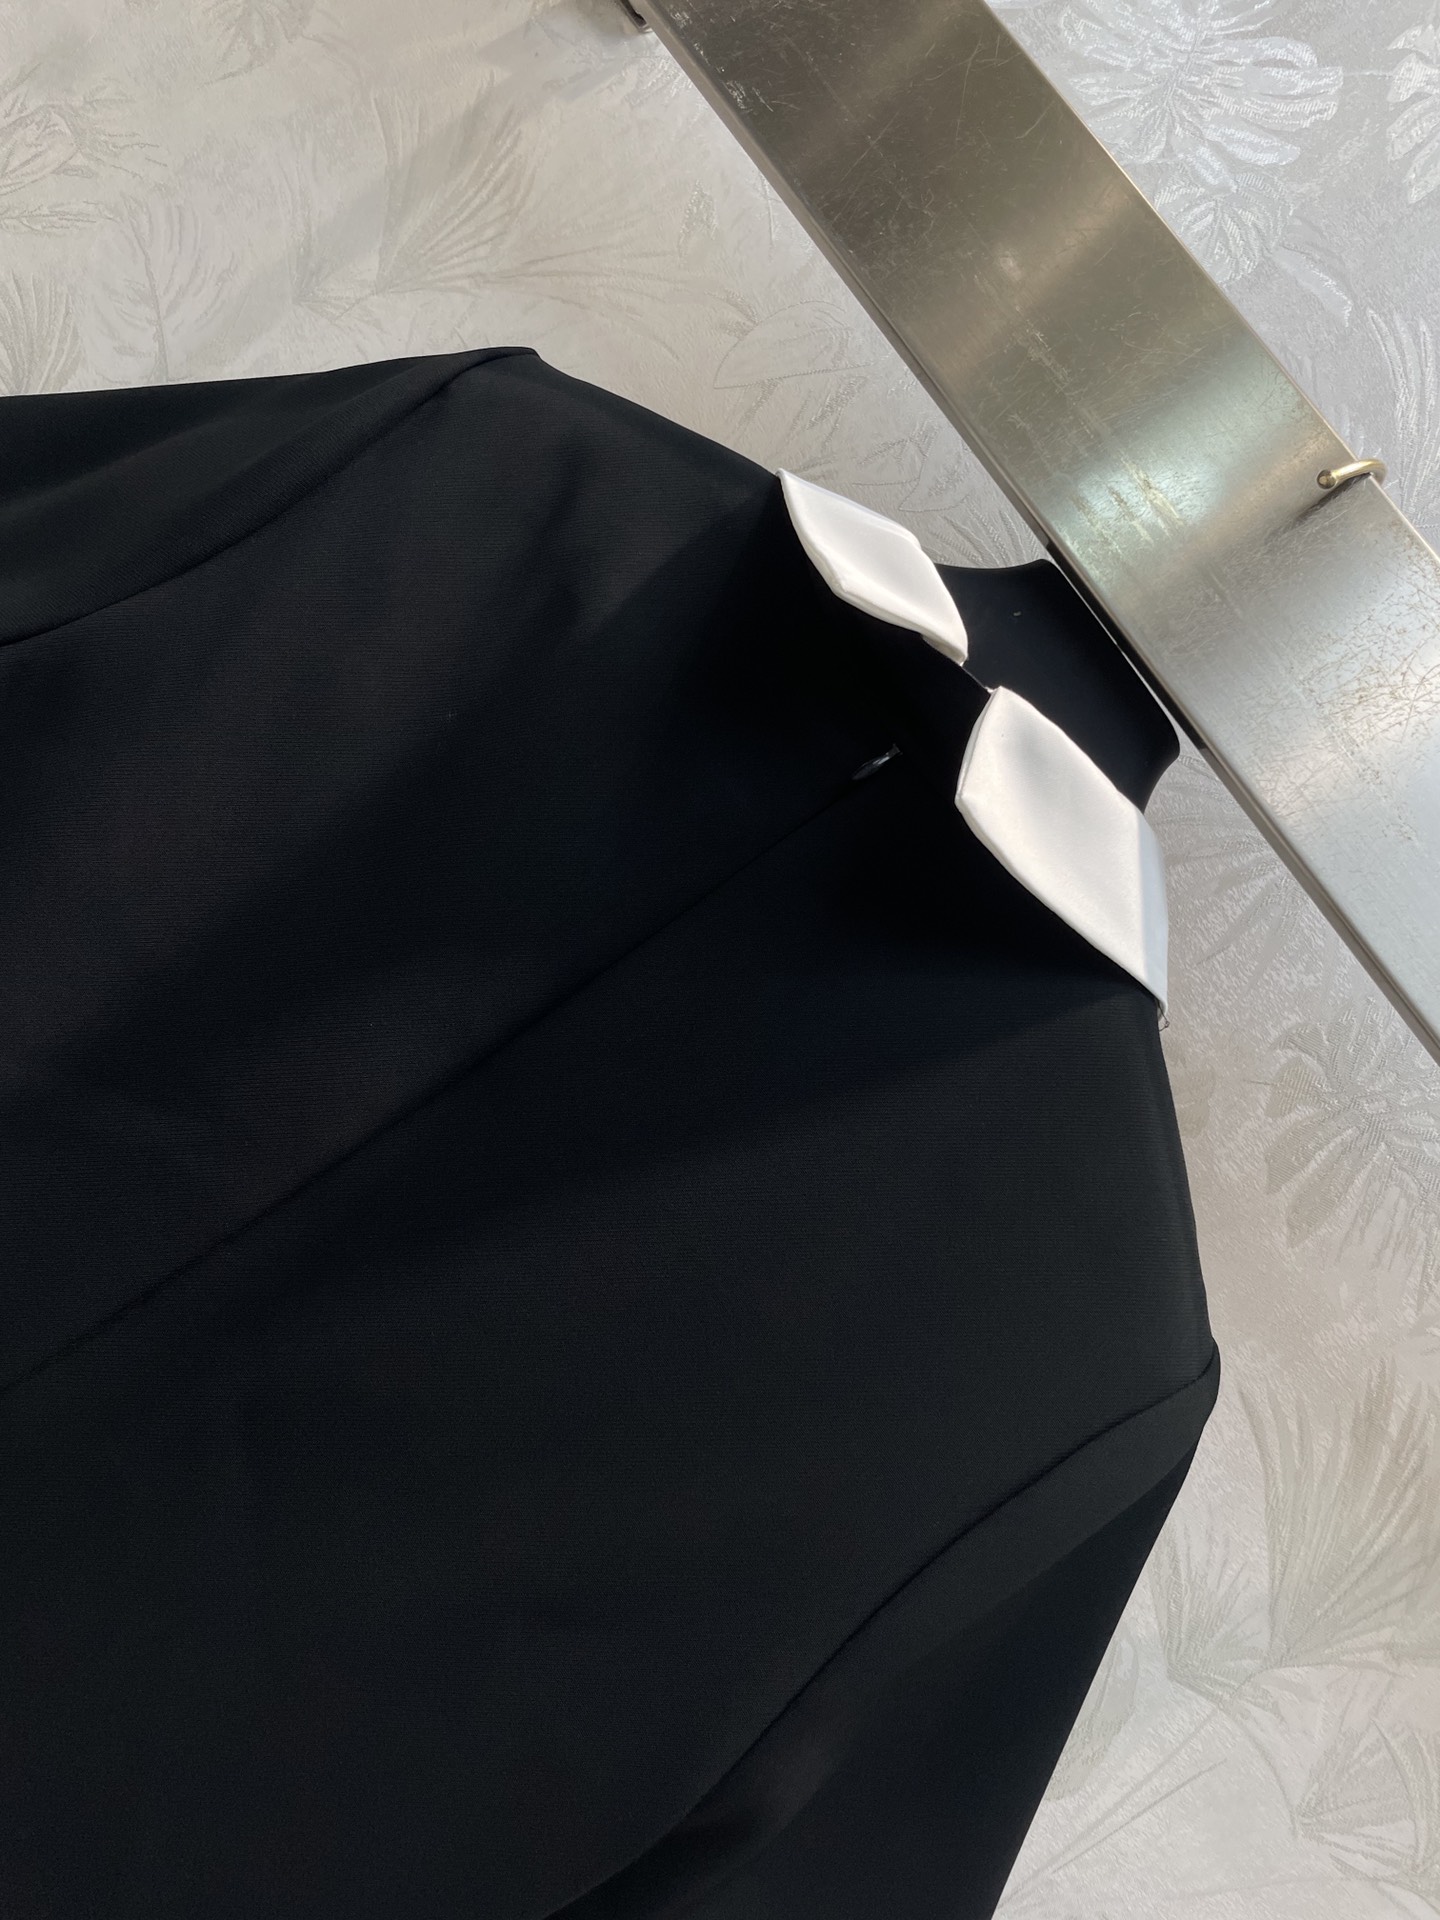 V家24春夏黑白拼色领带连衣裙V字扣领带的搭配拼色翻领设计短袖直筒版型藏肉显瘦又百搭经典黑白色搭配非常减